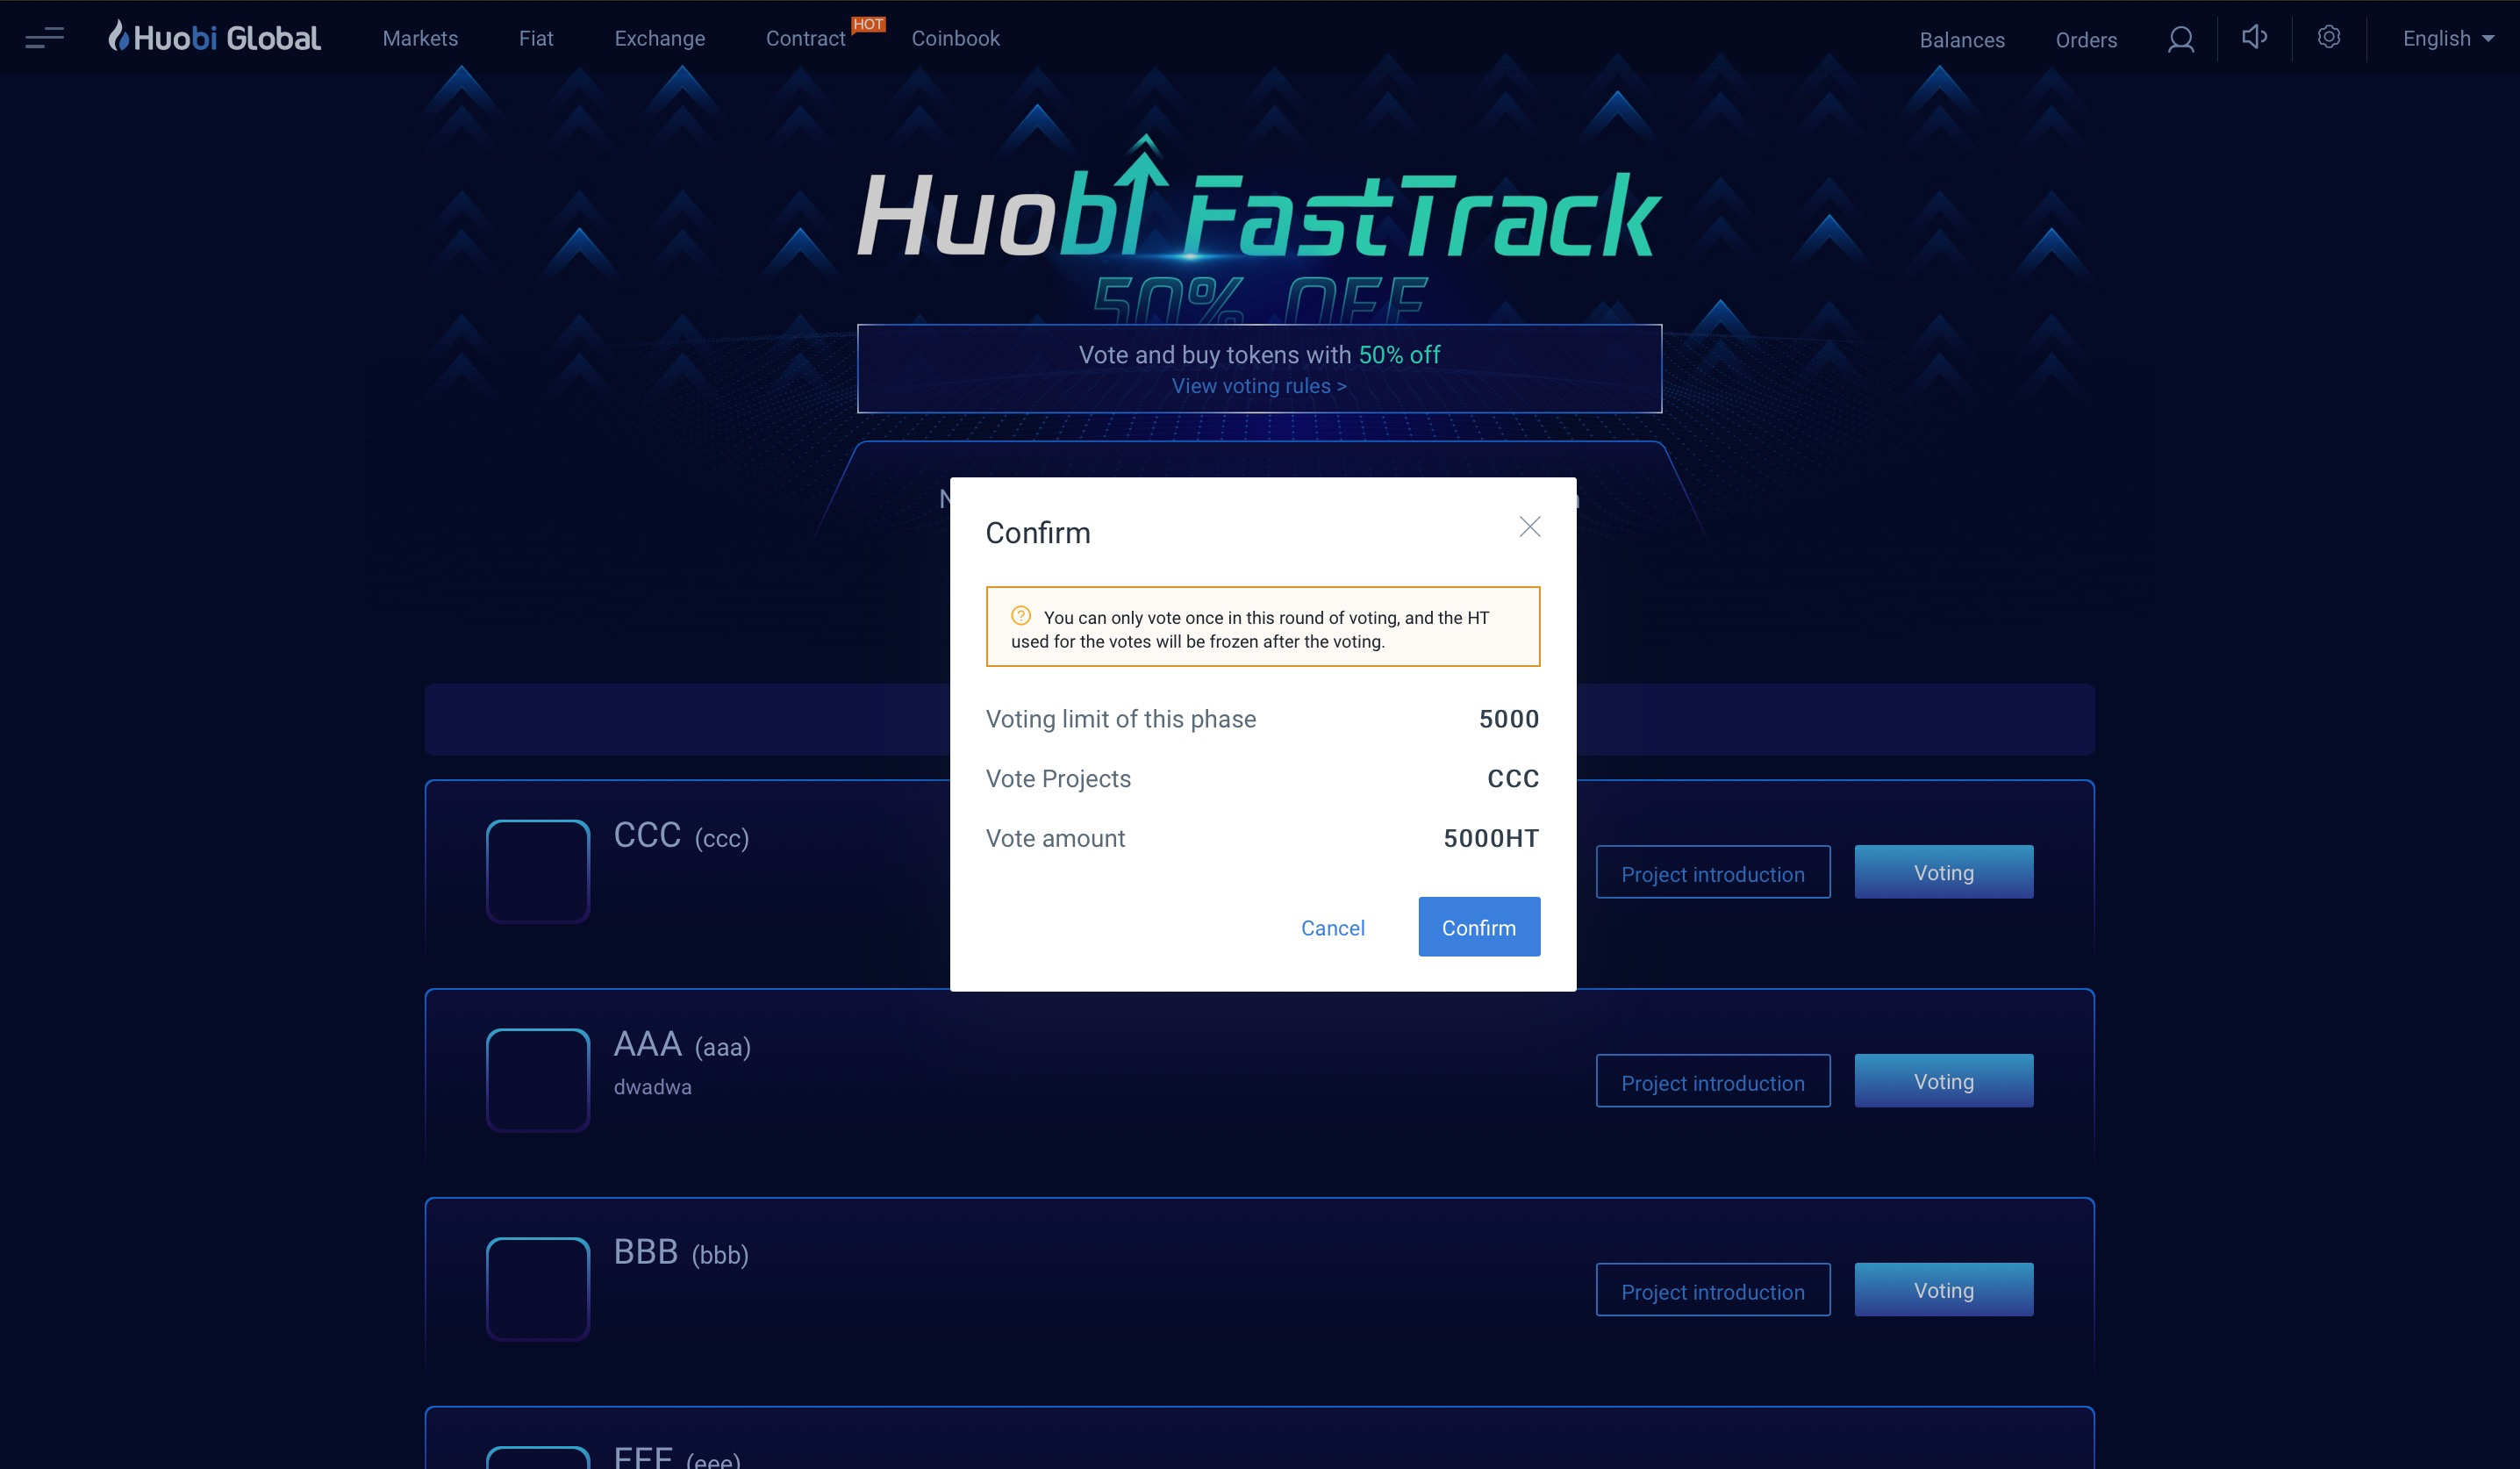 cach-vote-token-tren-Huobi-Fasttrack - Buoc 2